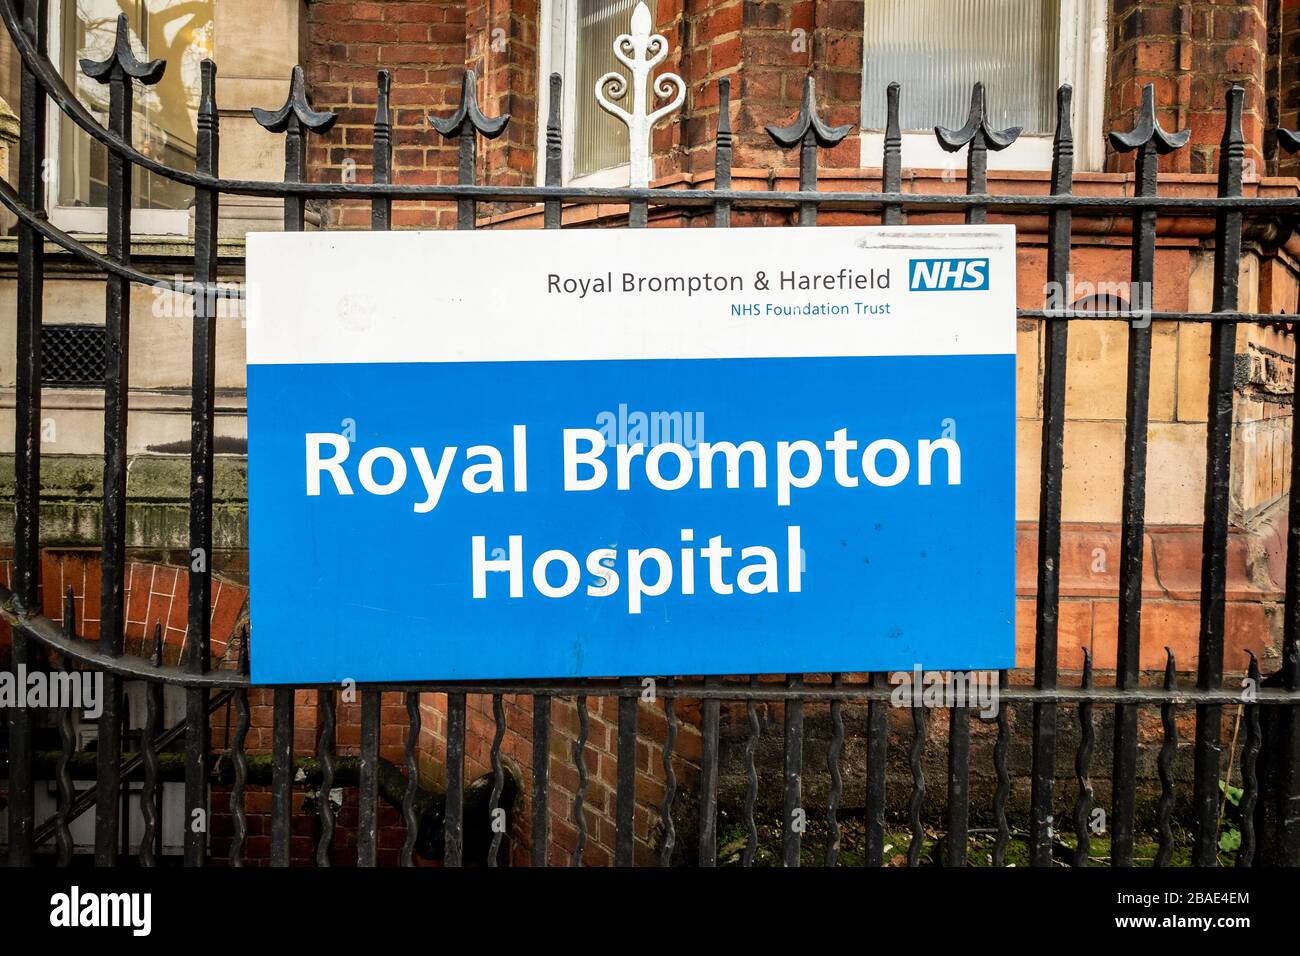 The Royal Marsden Hospital on Fulham Road, une fiducie de fondation NHS, Londres, Royaume-Uni Banque D'Images